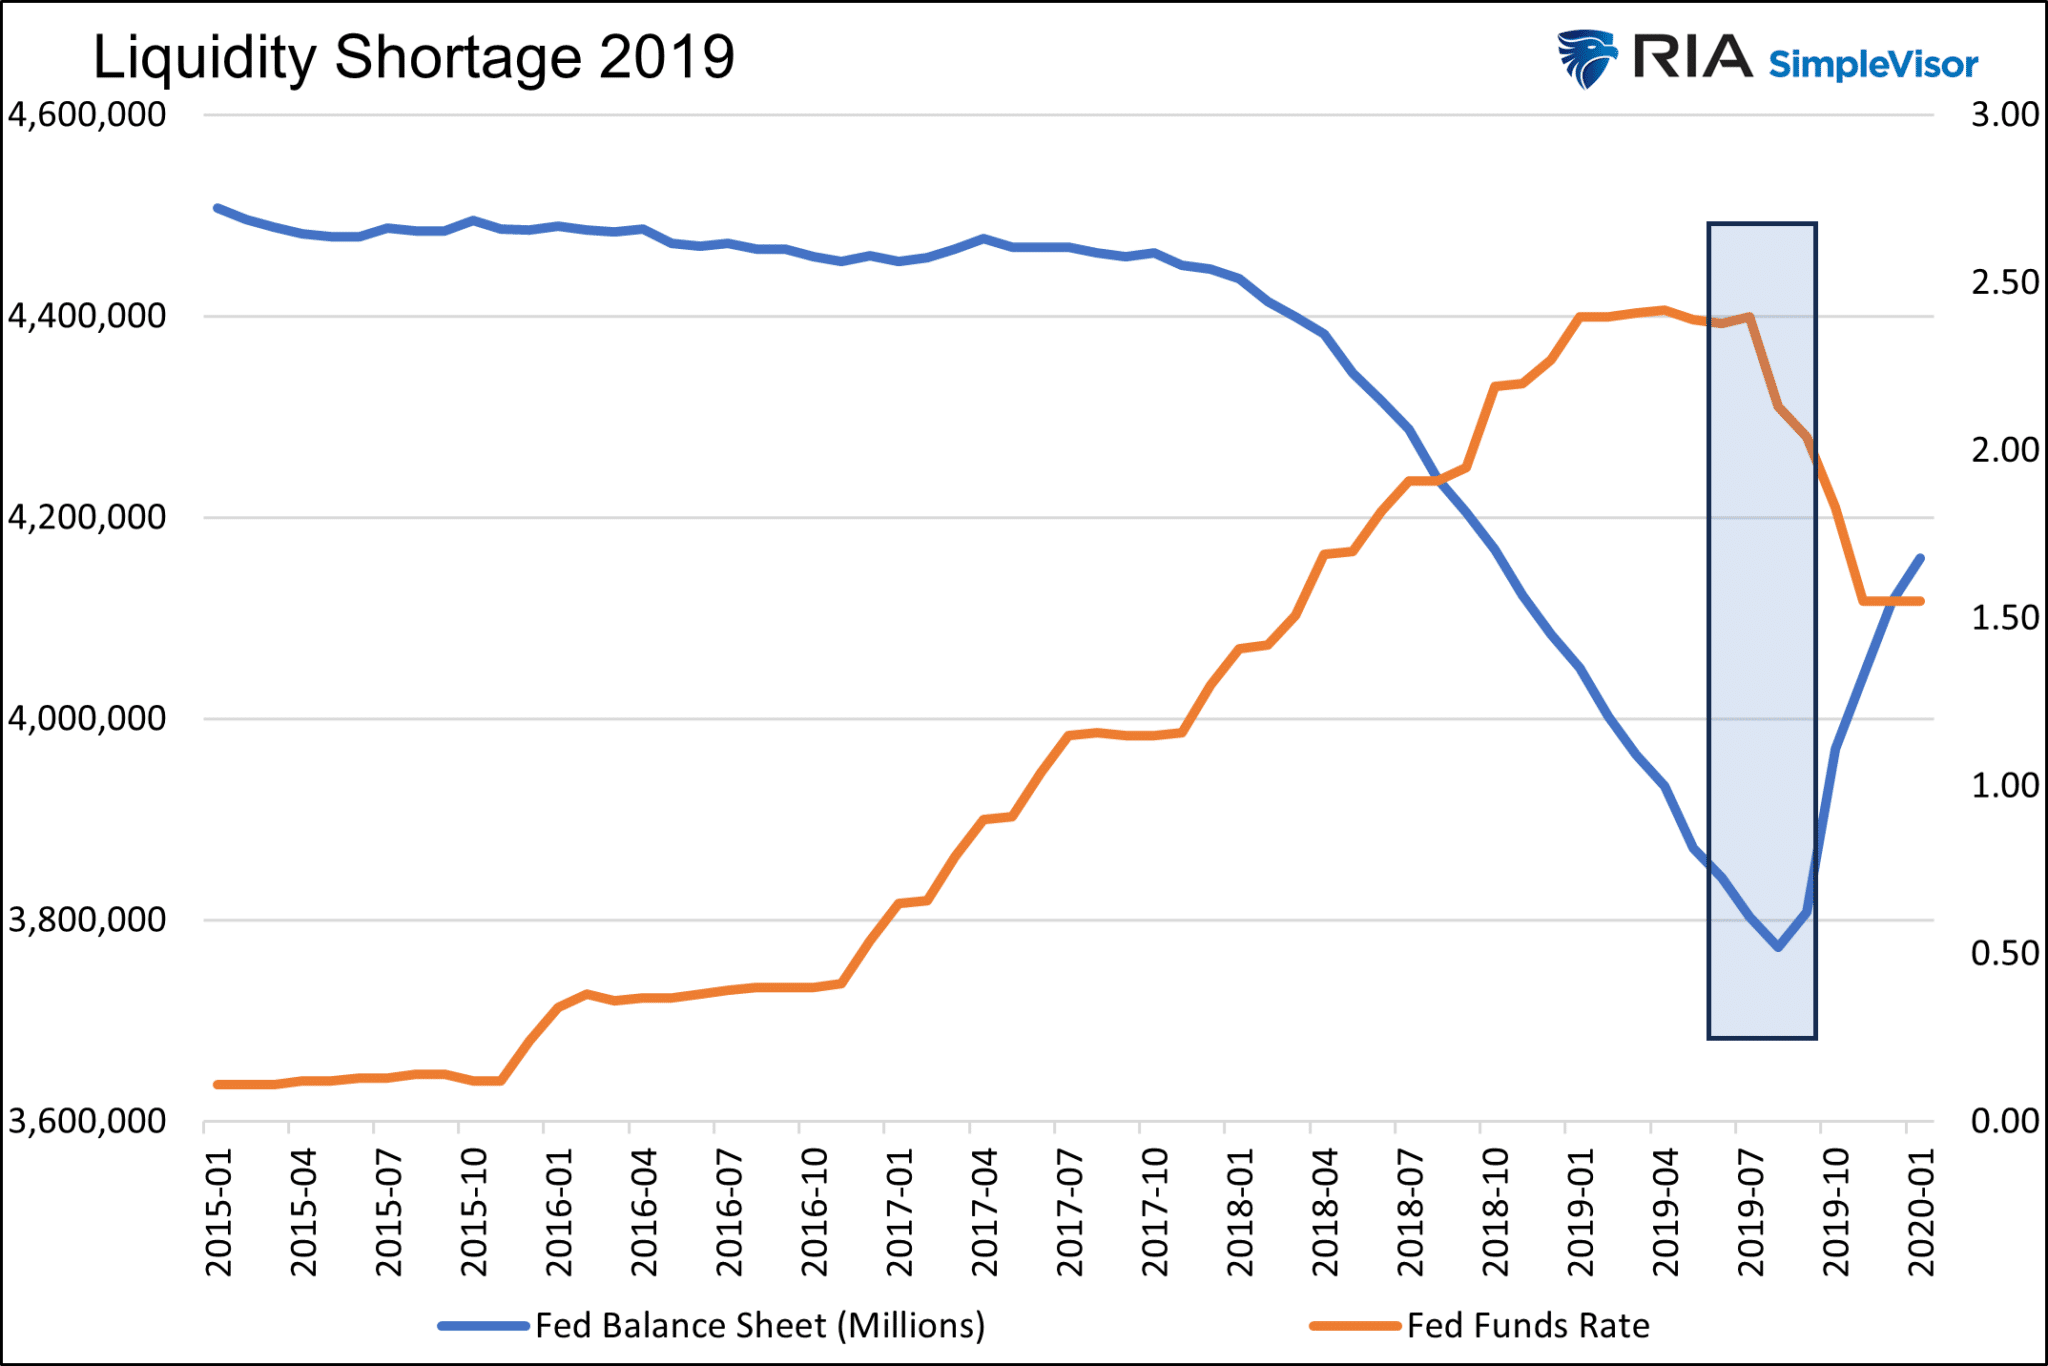 Liquidity Shortage 2019